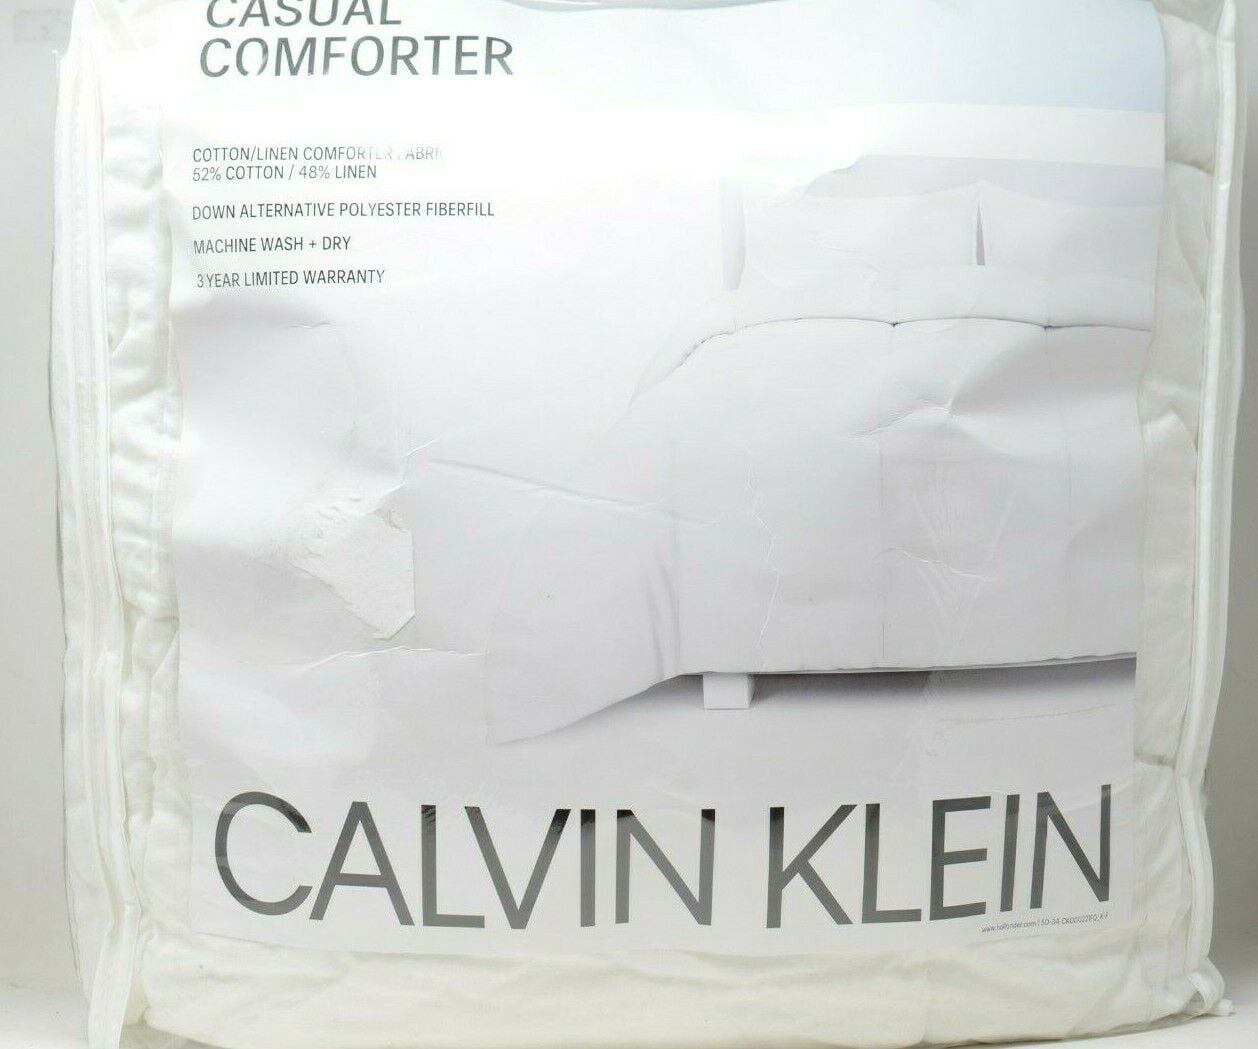 Calvin Klein Casual Linen Comforter size Full/Queen White 